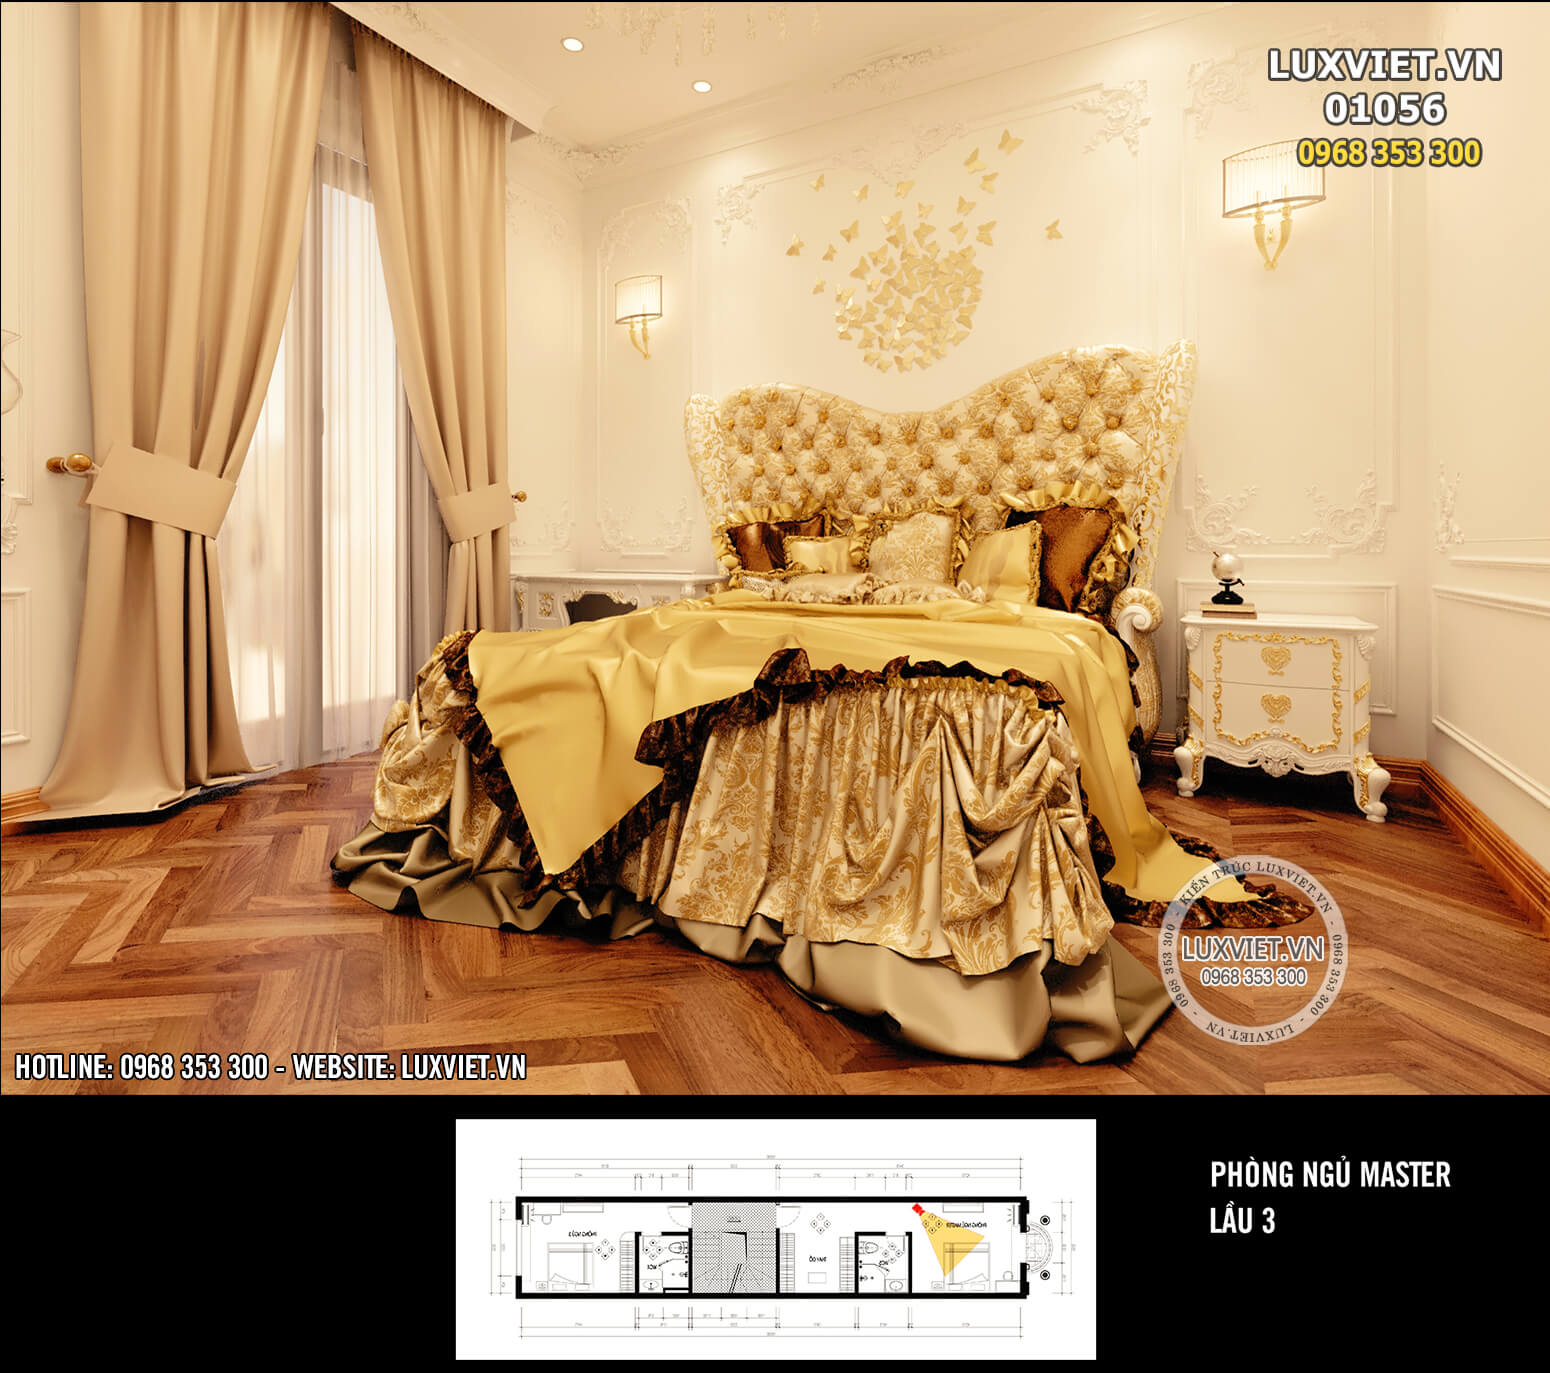 Hình ảnh: Phong cách thiết kế nội thất hoàng gia đẳng cấp nhất - LV 01056